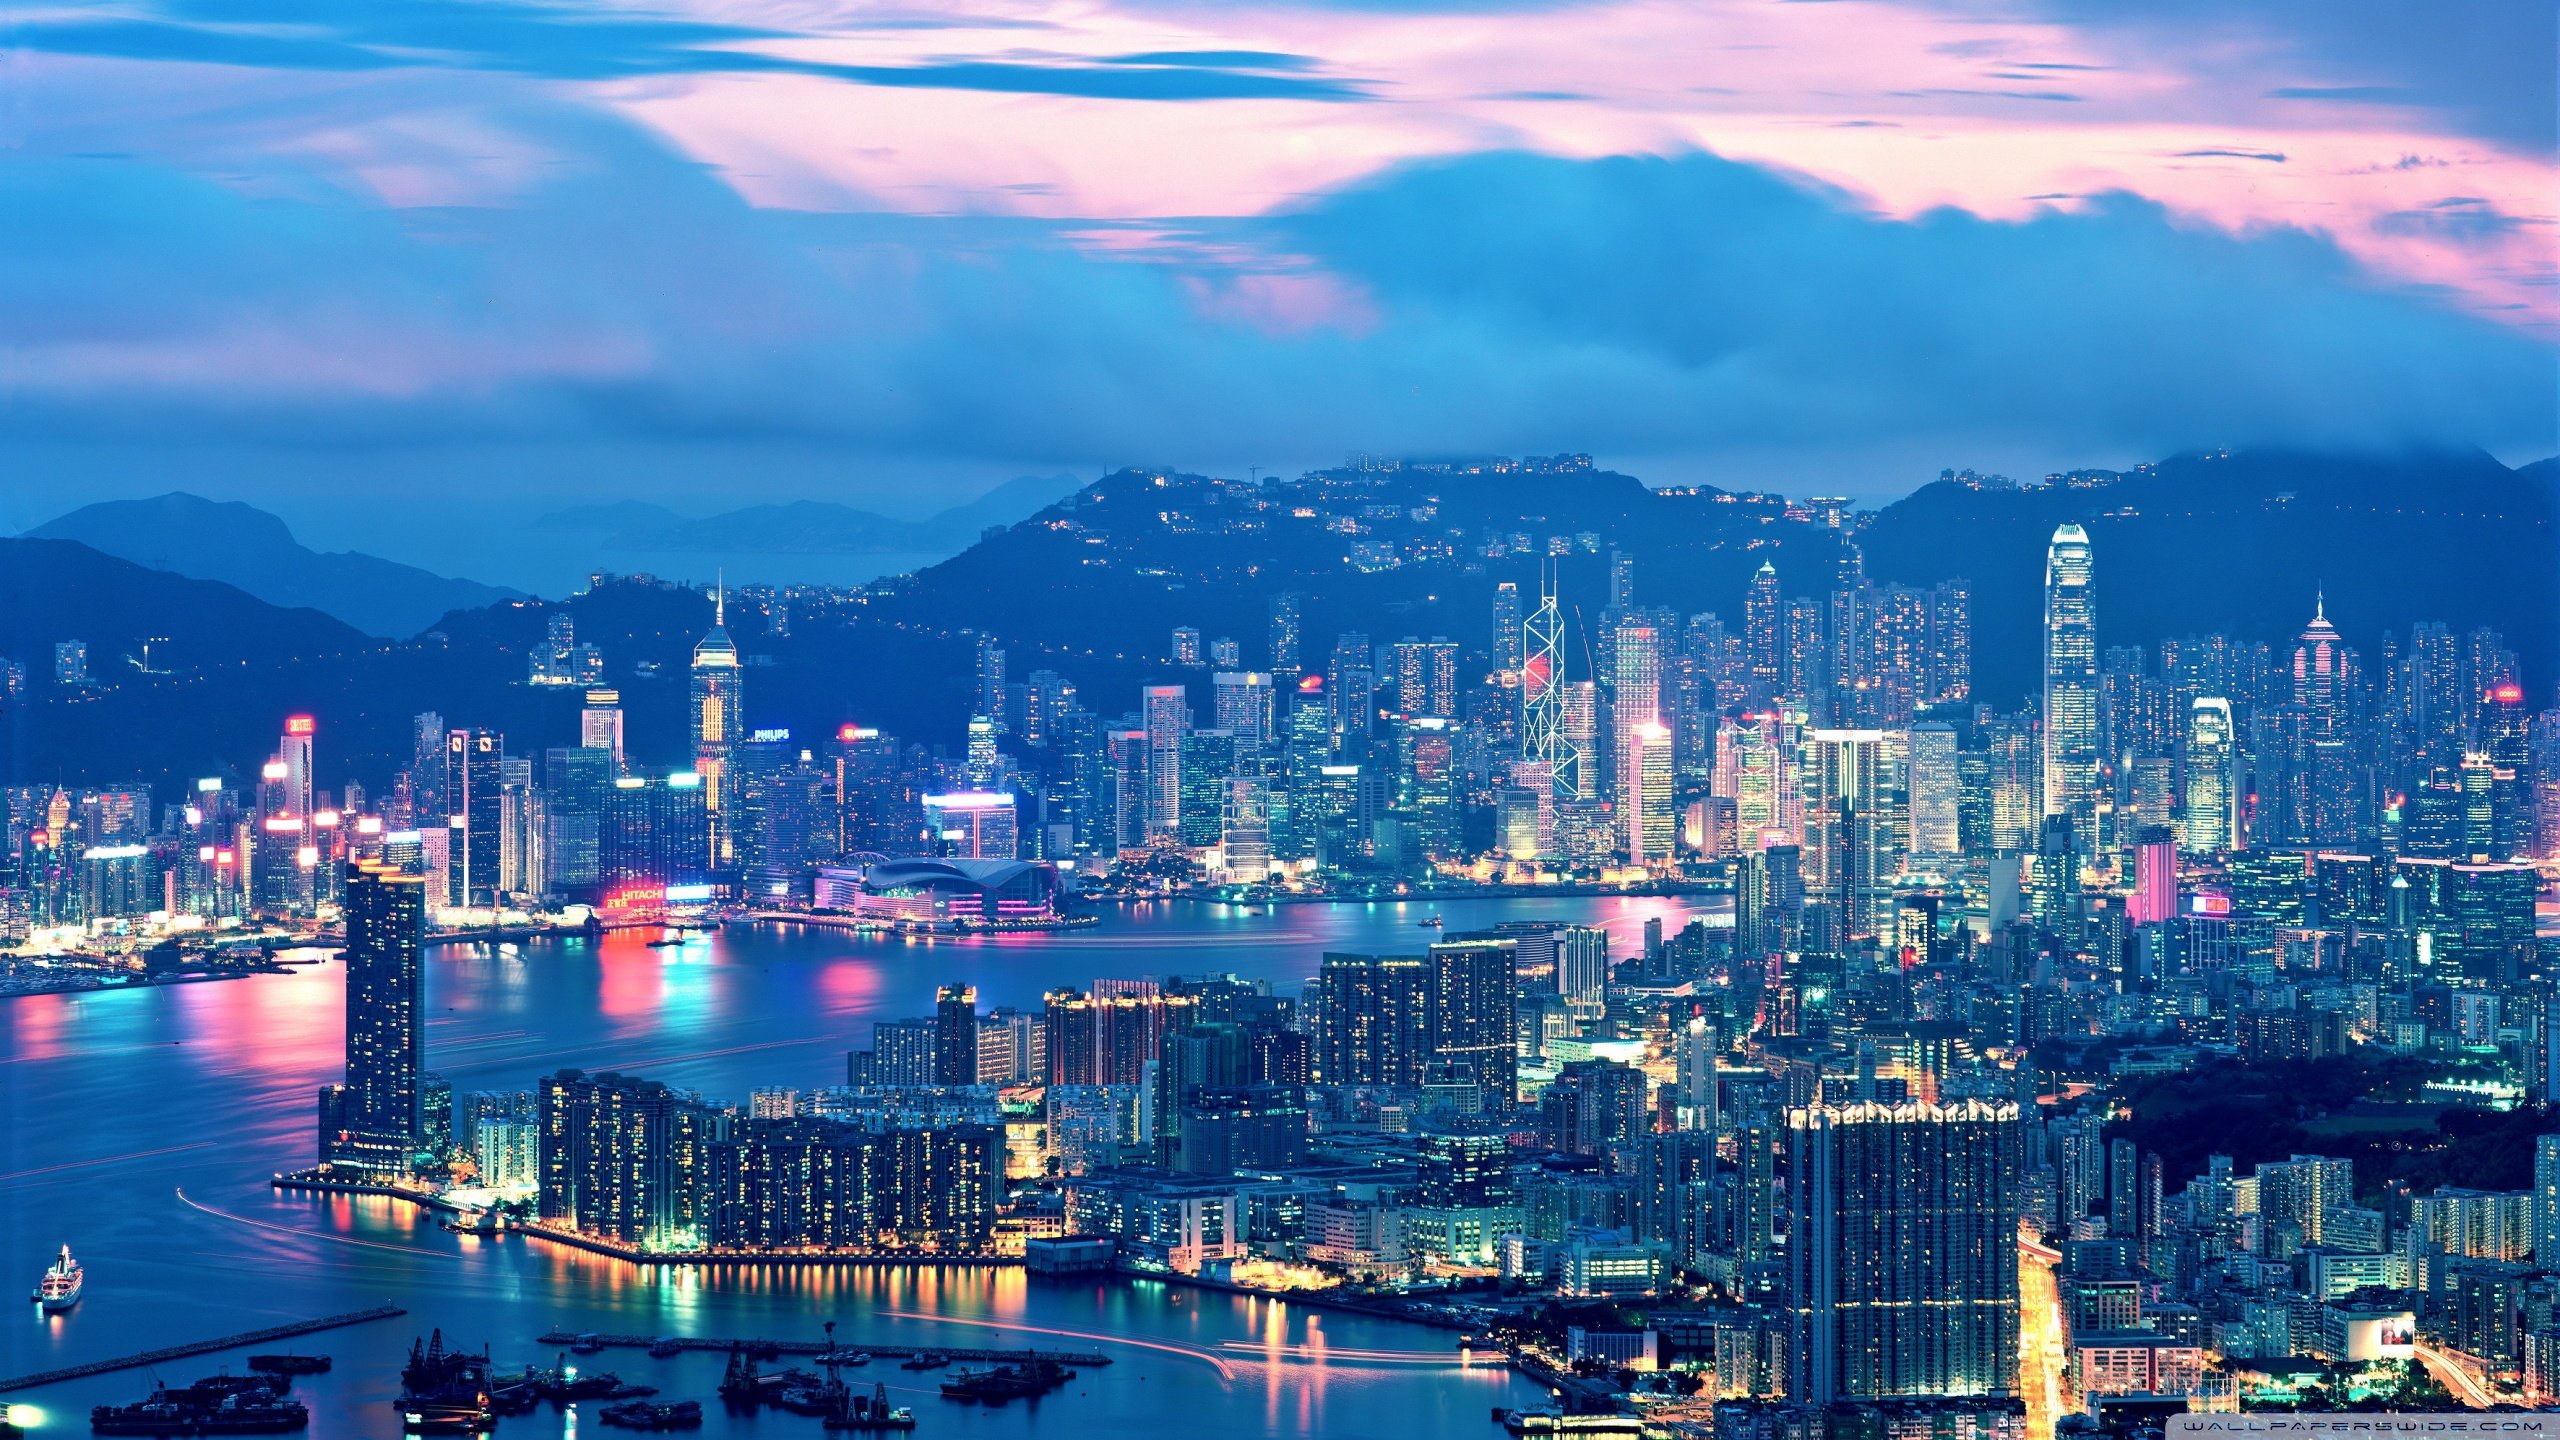 Hong Kong Night Lights ❤ 4K HD Desktop Wallpaper for 4K Ultra HD TV